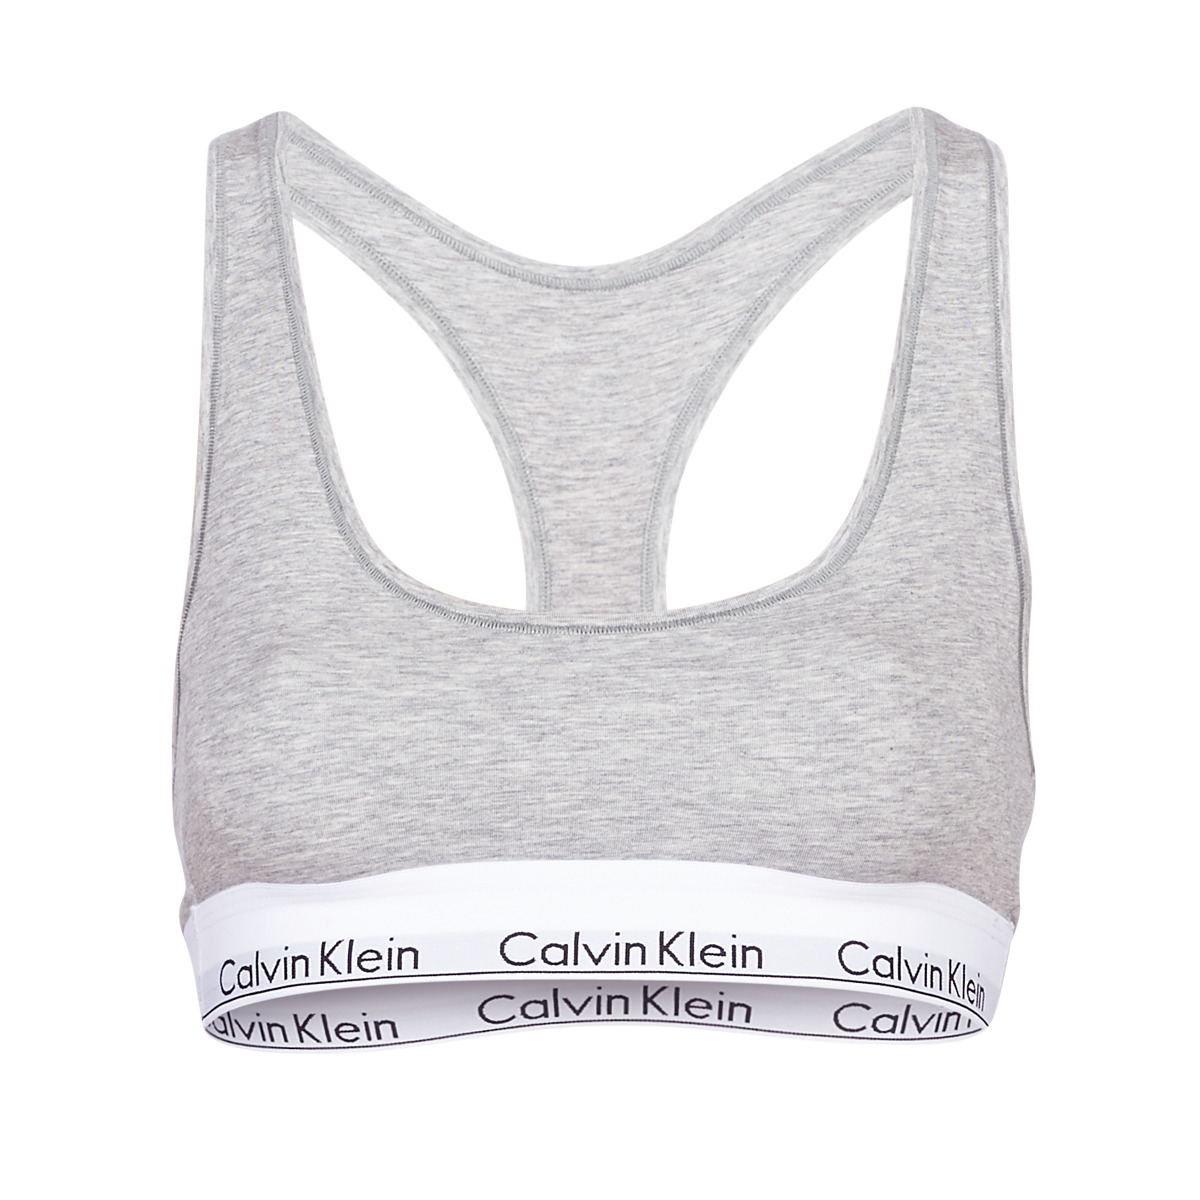 Calvin Klein Jeans MODERN COTTON UNLINED BRALETTE Grau - Unterwäsche Sport-BH  Damen CHF